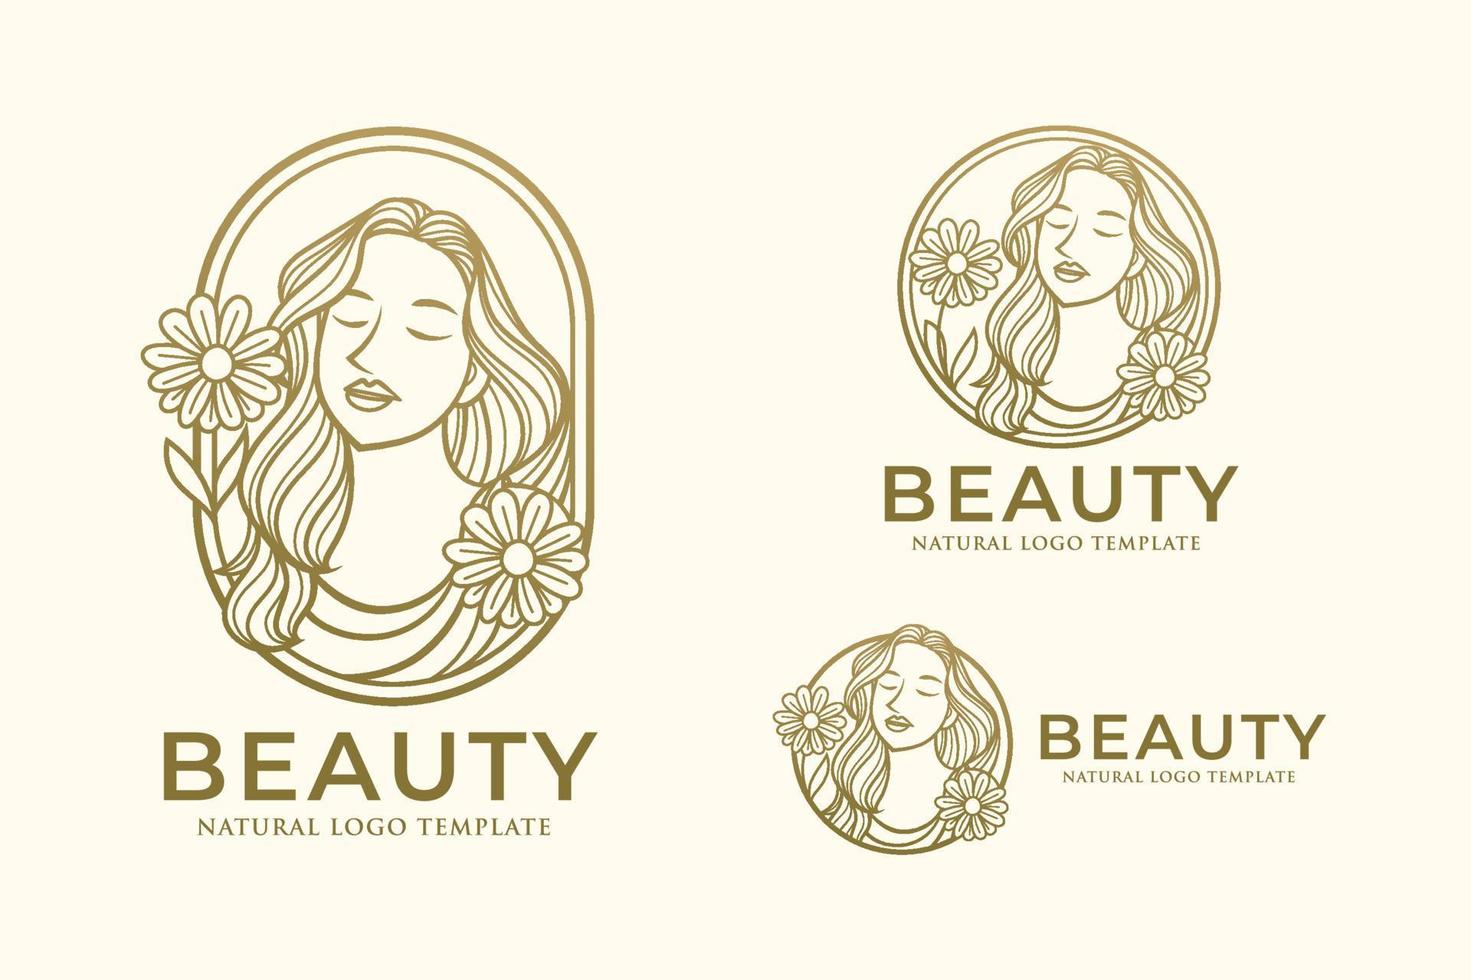 Beauty Woman Line Art Logo Design Template vector